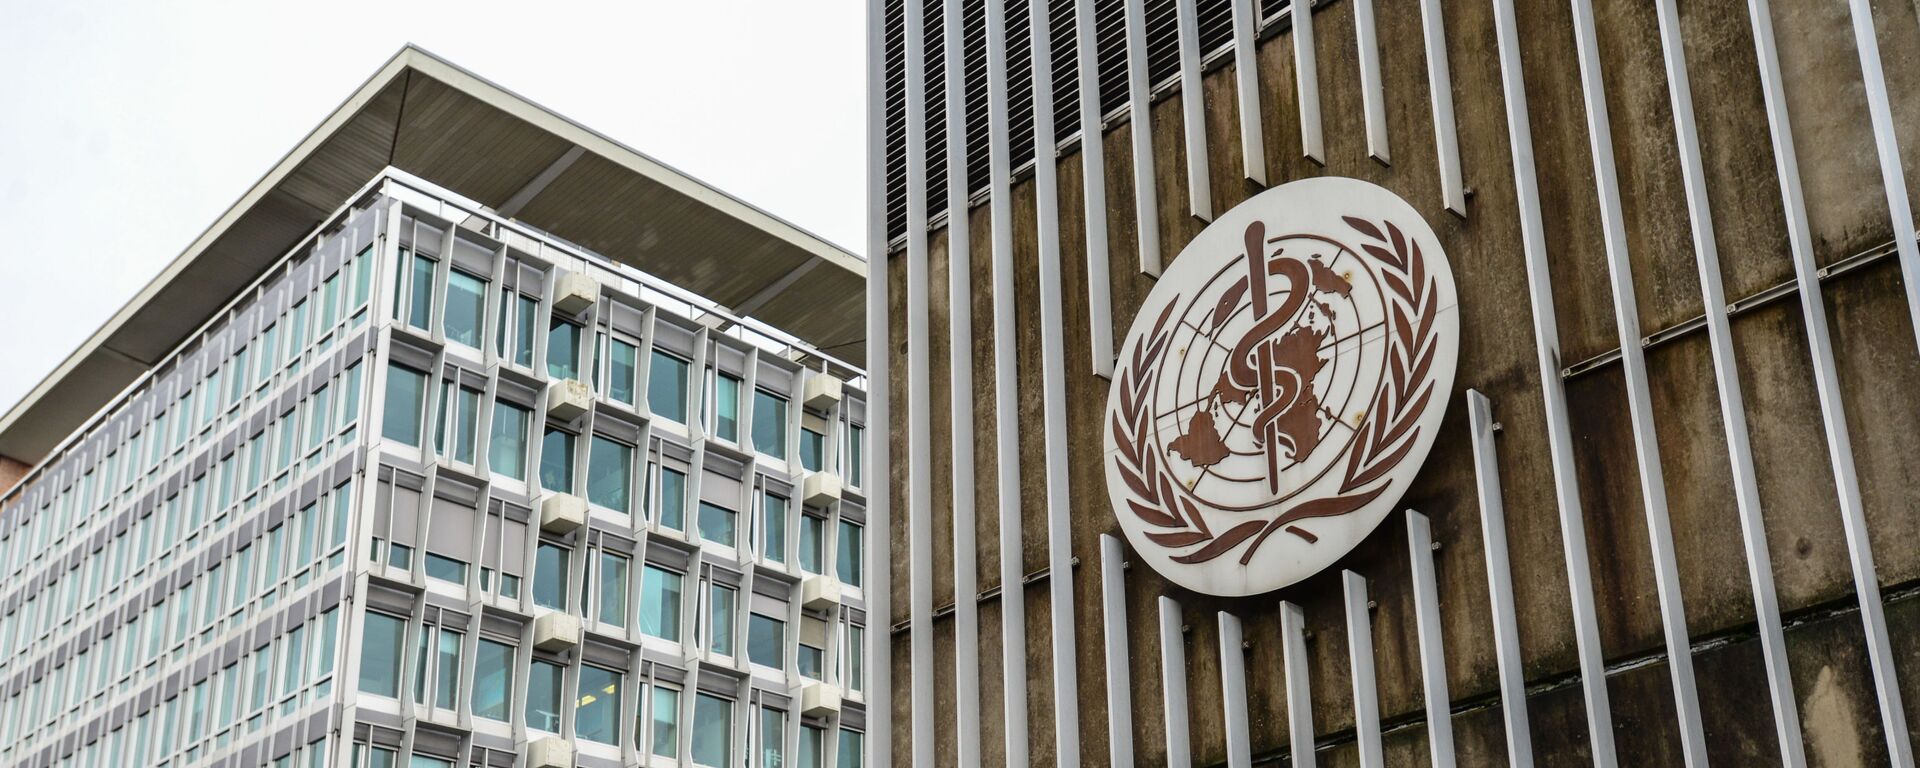 Здание штаб-квартиры Всемирной организации здравоохранения в Женеве.  - Sputnik Латвия, 1920, 19.12.2021